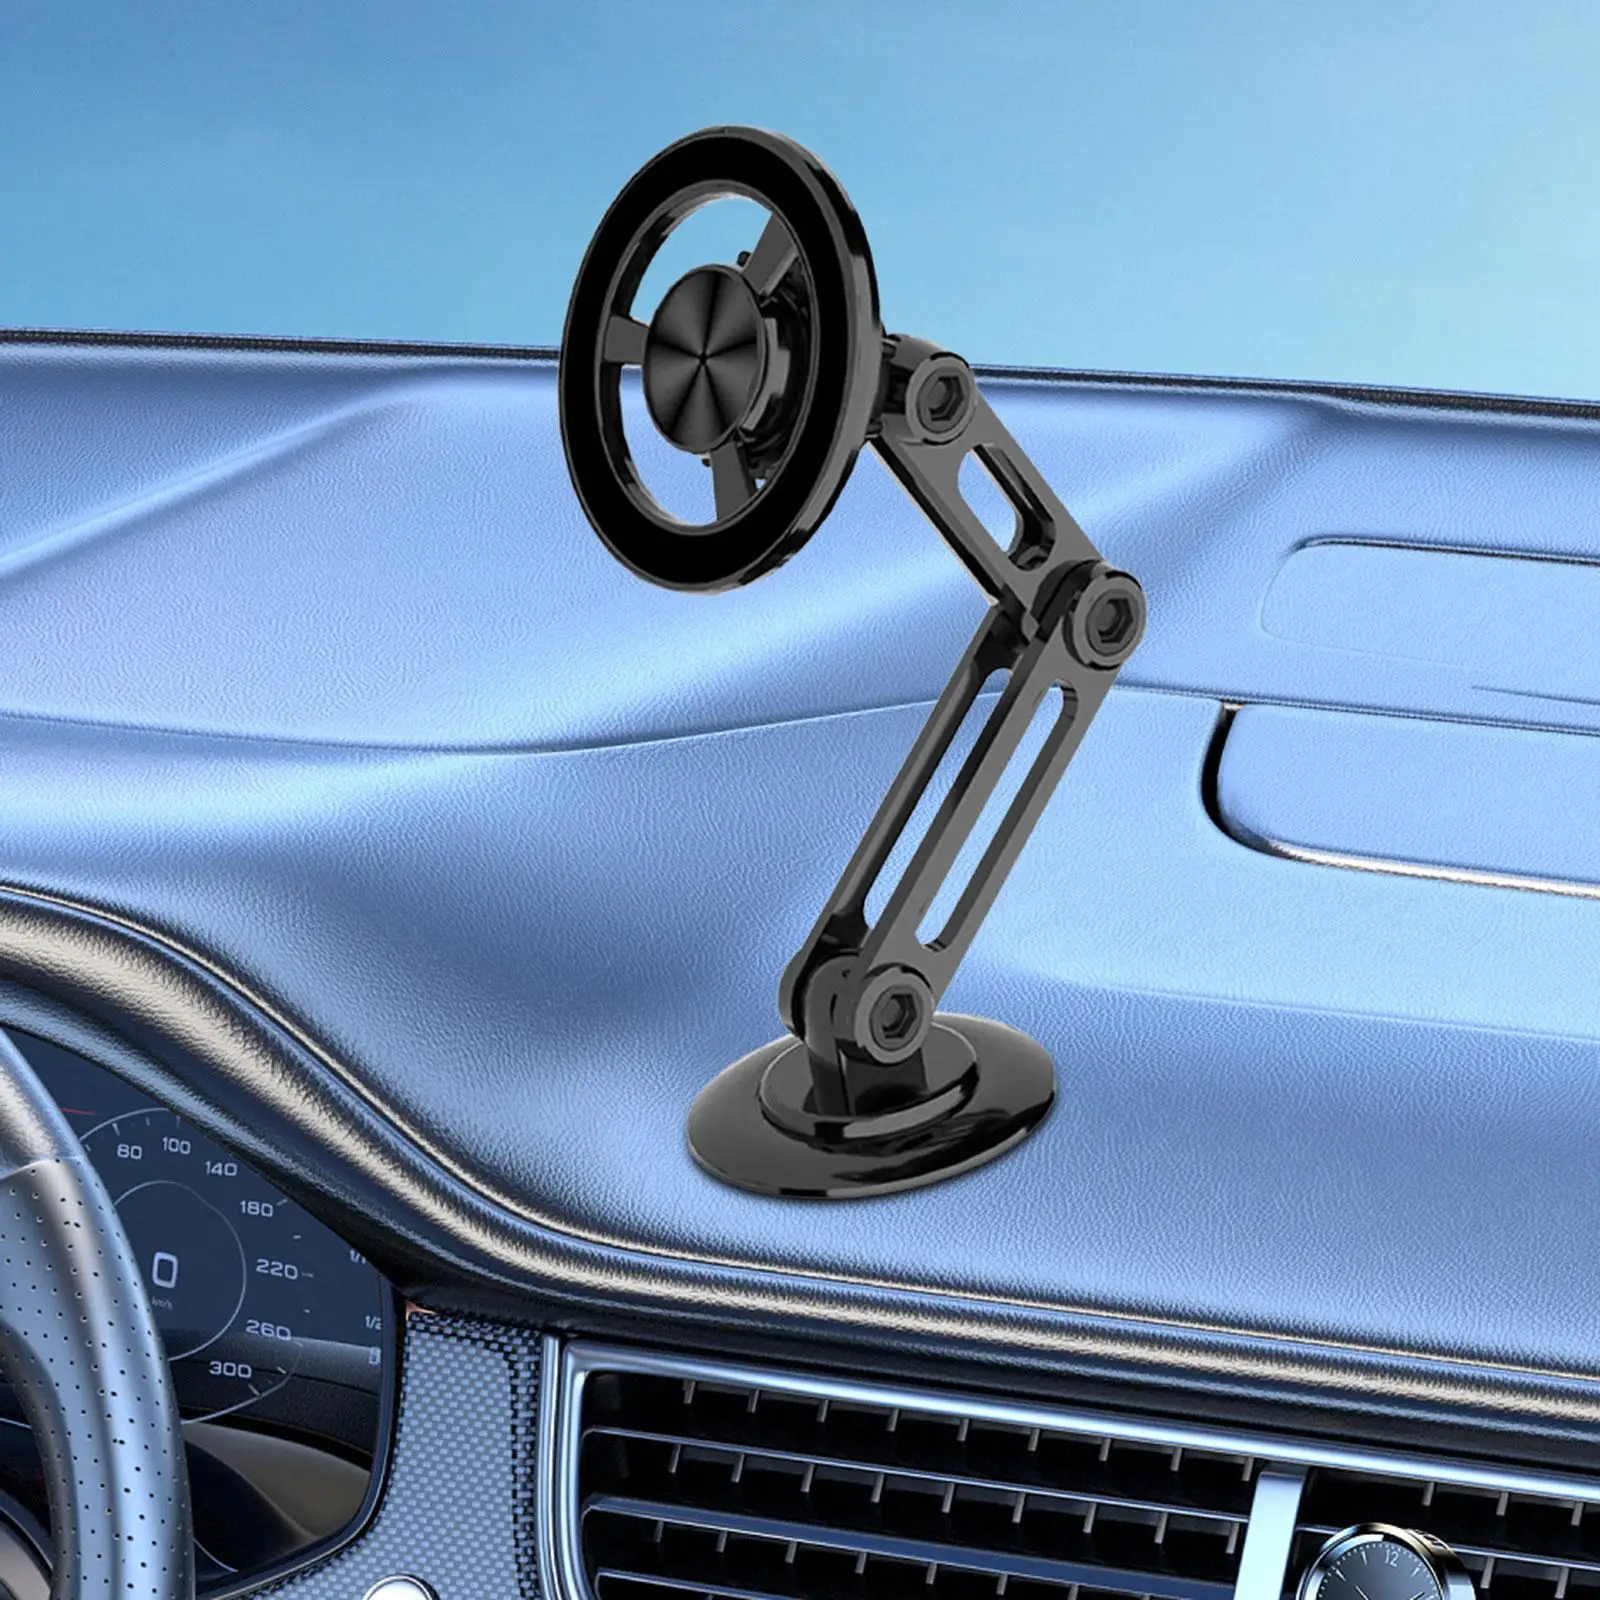 Magnetic Phone Holder for Car Navigation Bracket for Air Vent